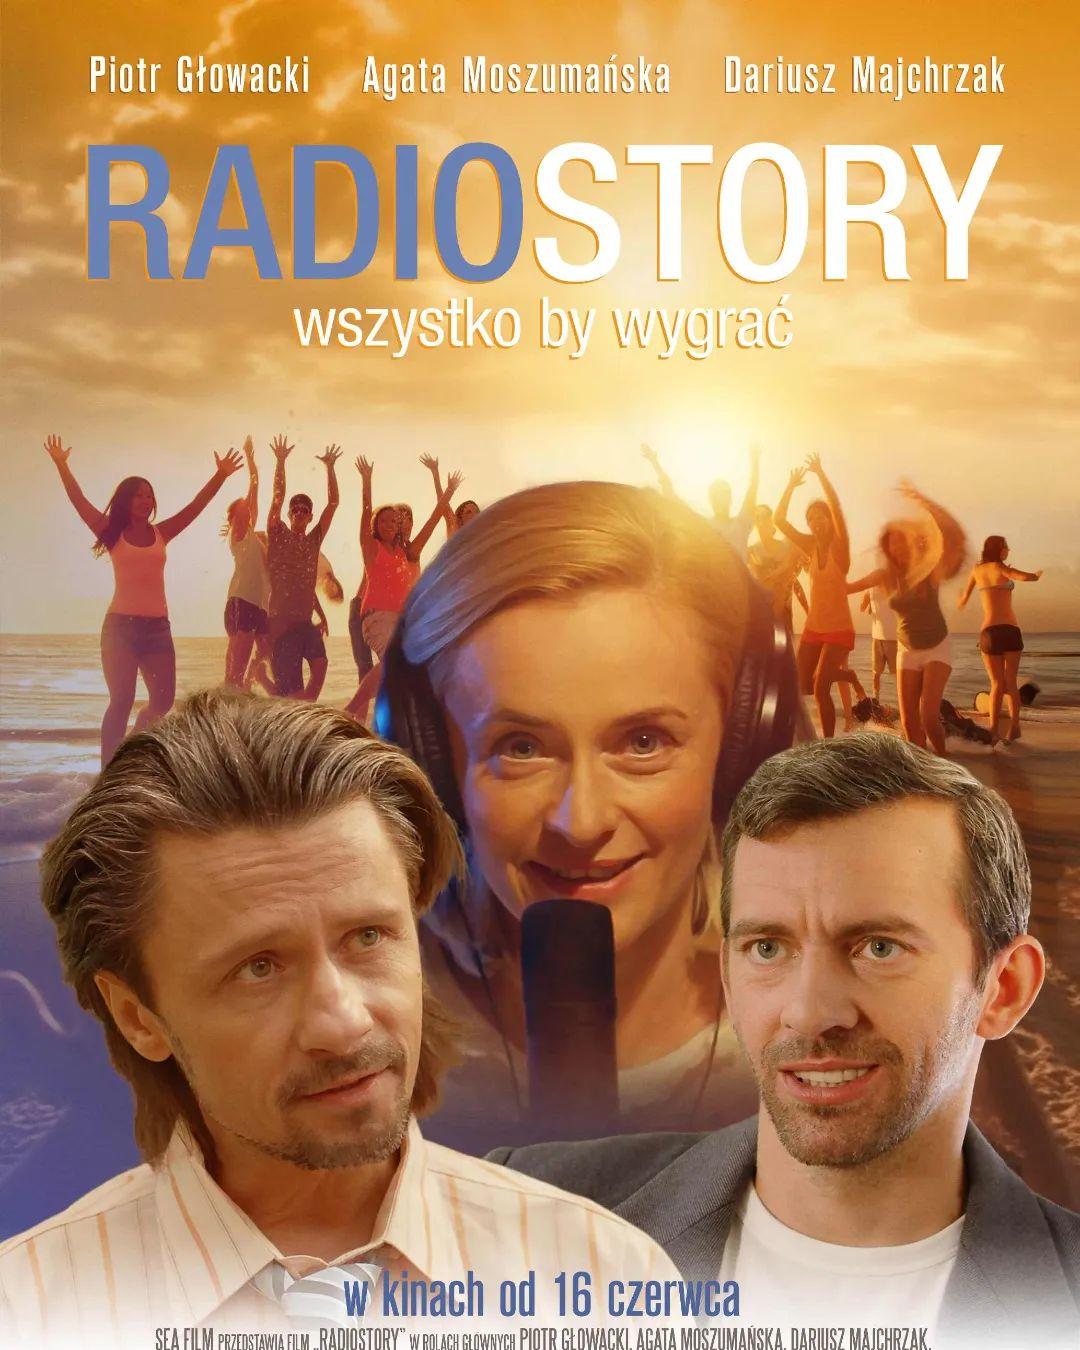 Radiostory